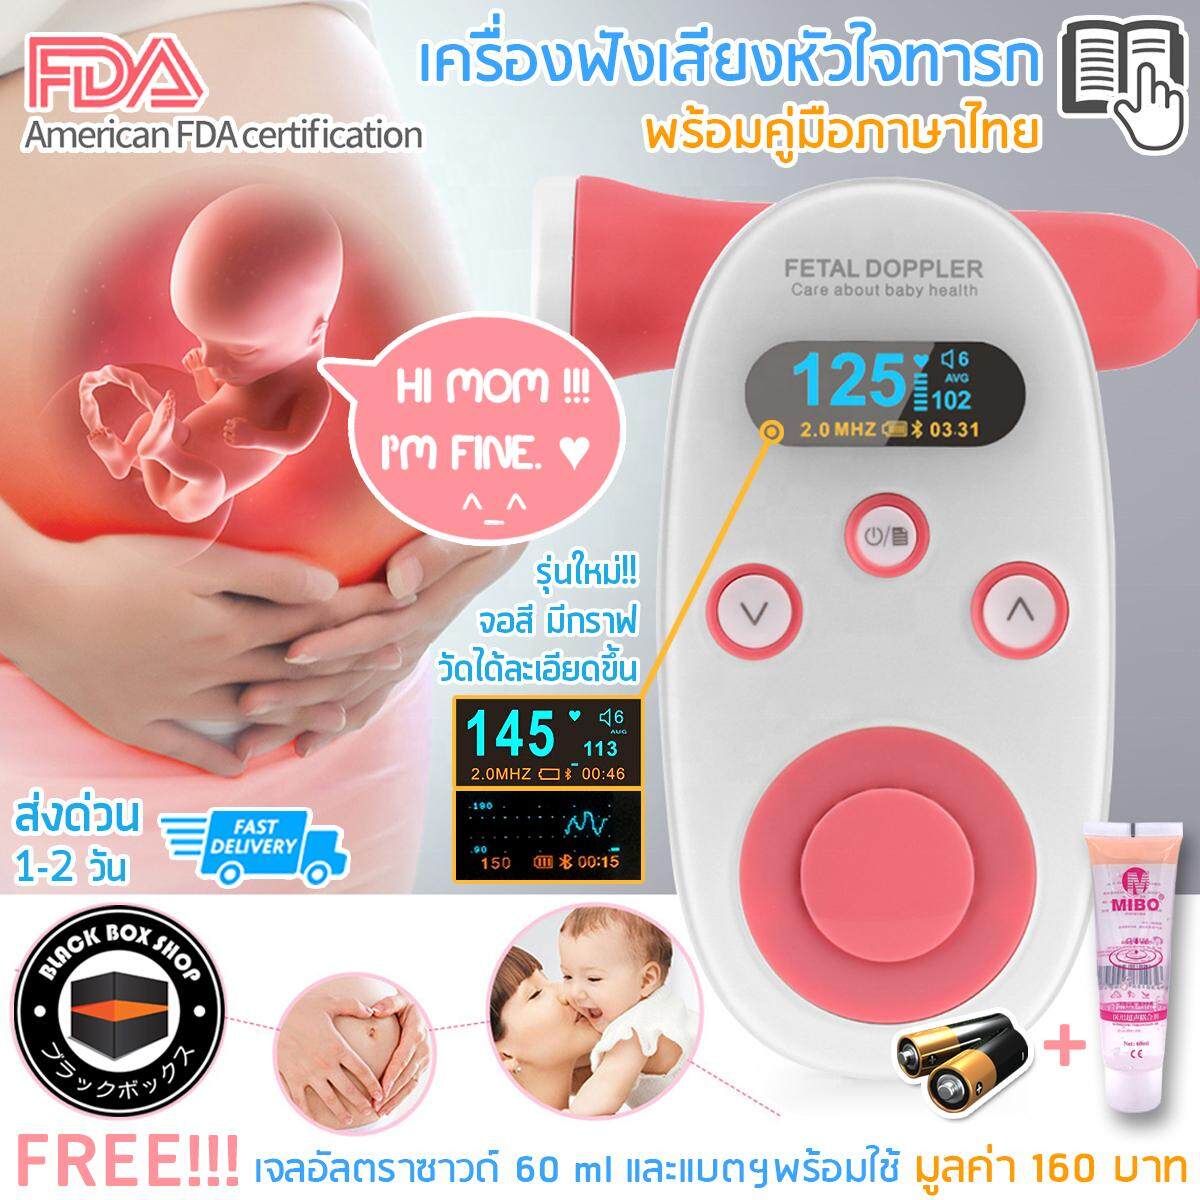 รุ่นใหม่ จอสี มีกราฟ เครื่องฟังหัวใจ เครื่องฟังเสียงหัวใจทารก ในครรภ์ เครื่องฟังเสียงอัลตร้าซาวด์ Doppler fetal adoring แถมฟรี!!! เจลอัลตร้าซาวด์ ขนาด 60 ml และแบตพร้อมใช้ พร้อมคู่มือภาษาไทย